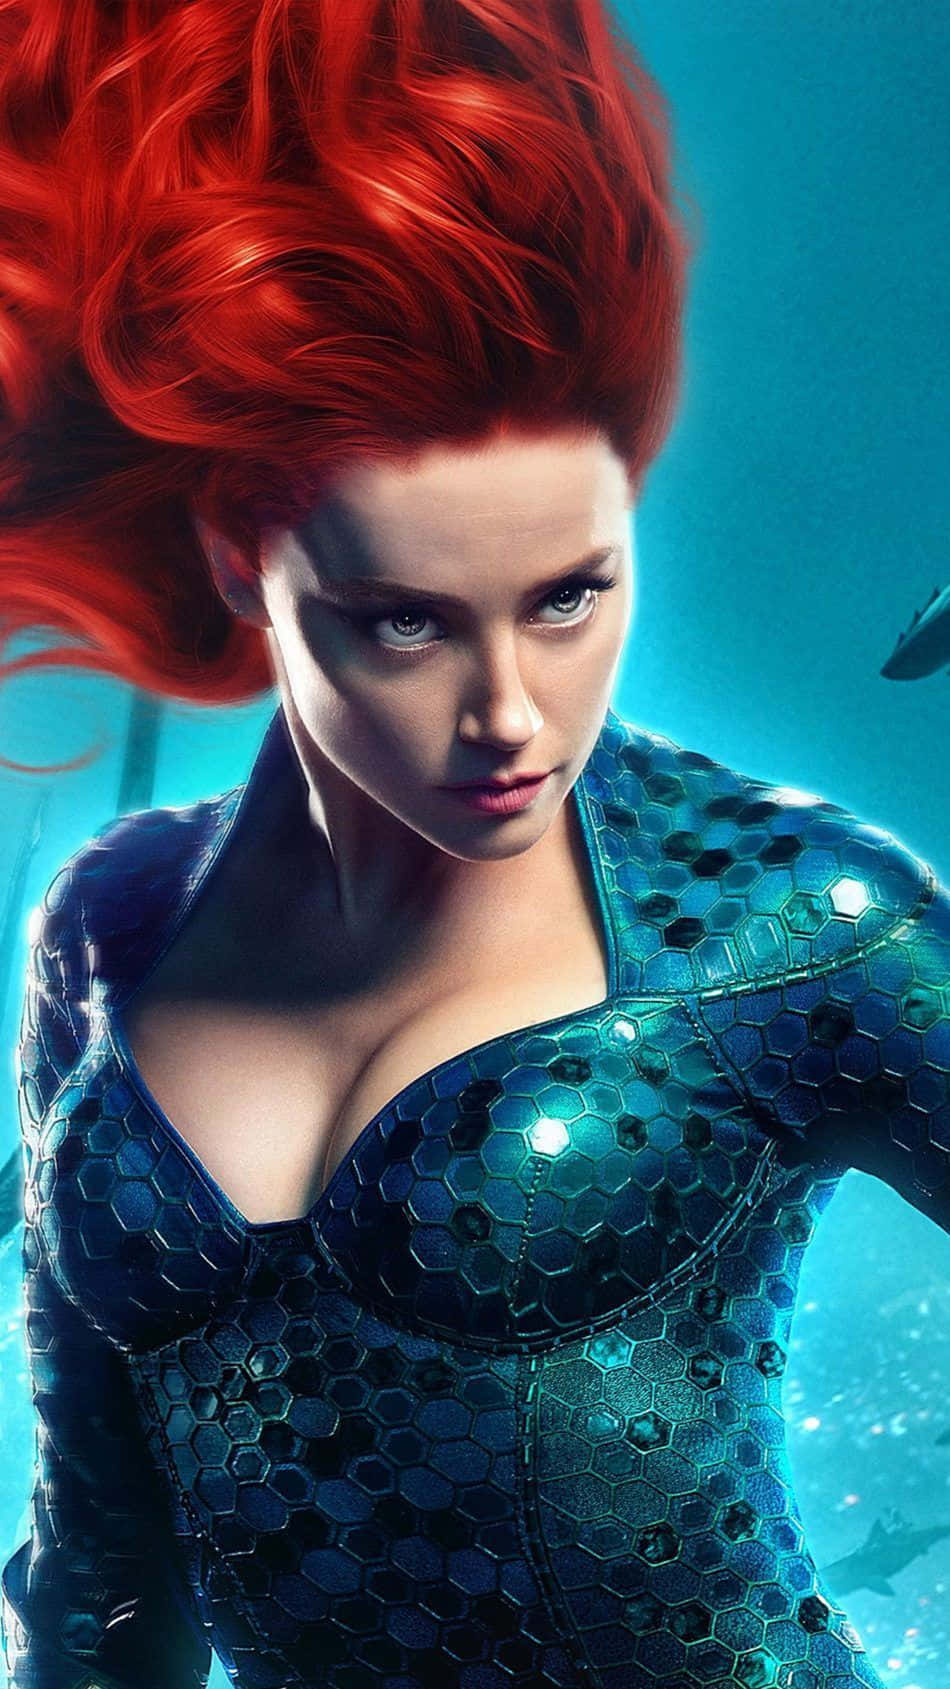 Diebritisch-amerikanische Schauspielerin Amber Heard Ist Bekannt Für Ihre Vielseitigen Rollen In Blockbuster-filmen Wie Aquaman Und The Rum Diary.